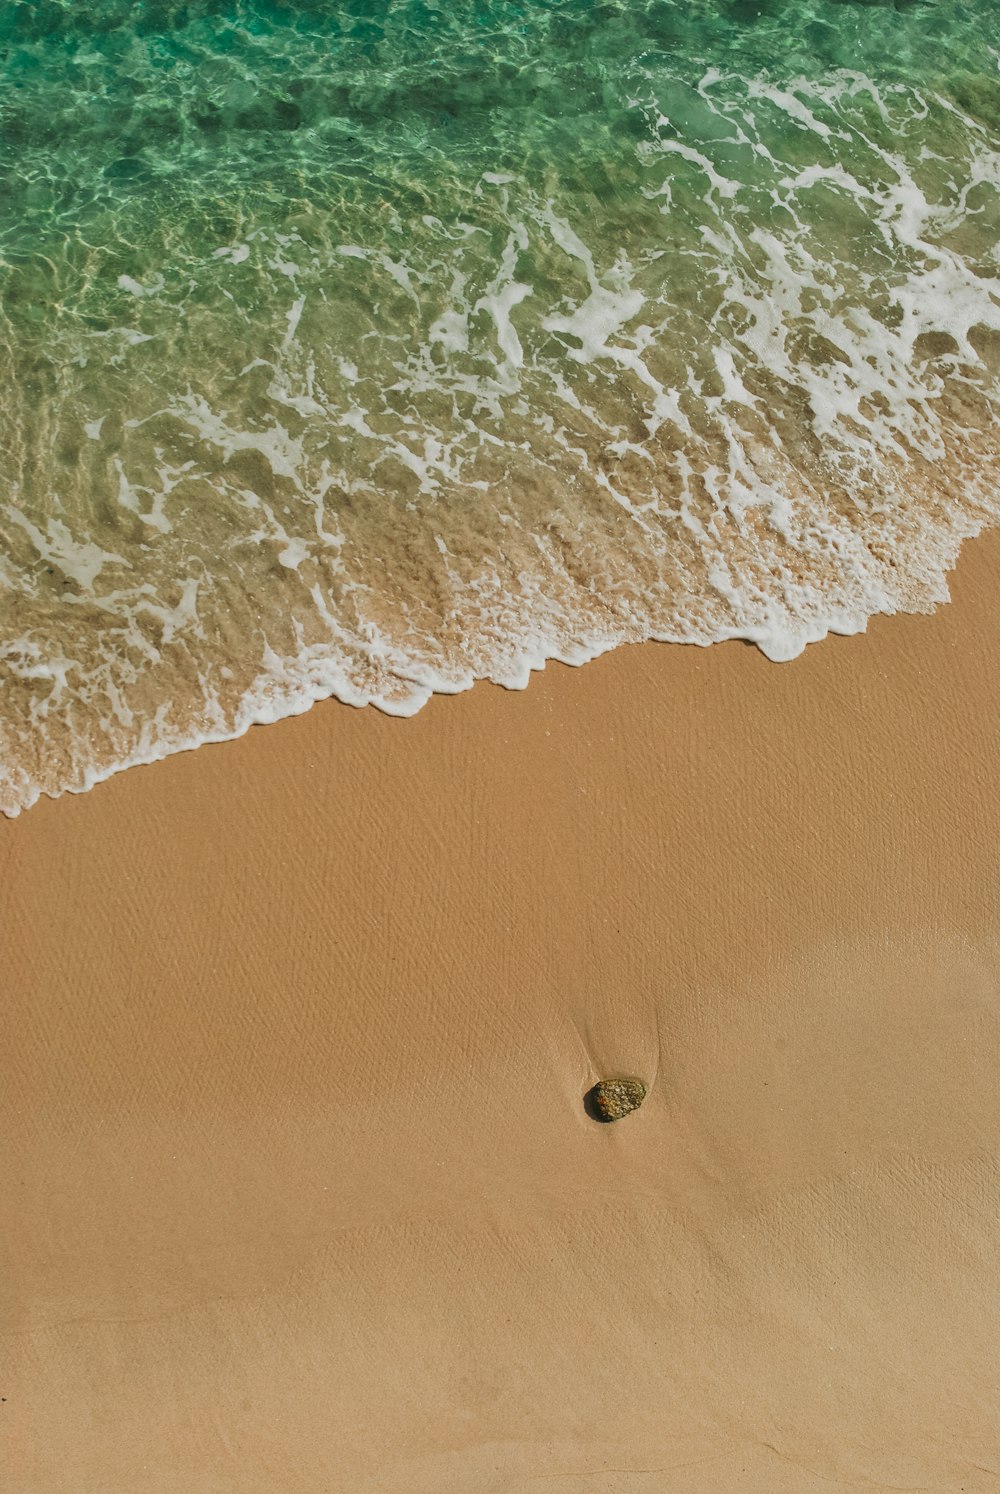 Cuerpo de agua cerca de la arena durante el día